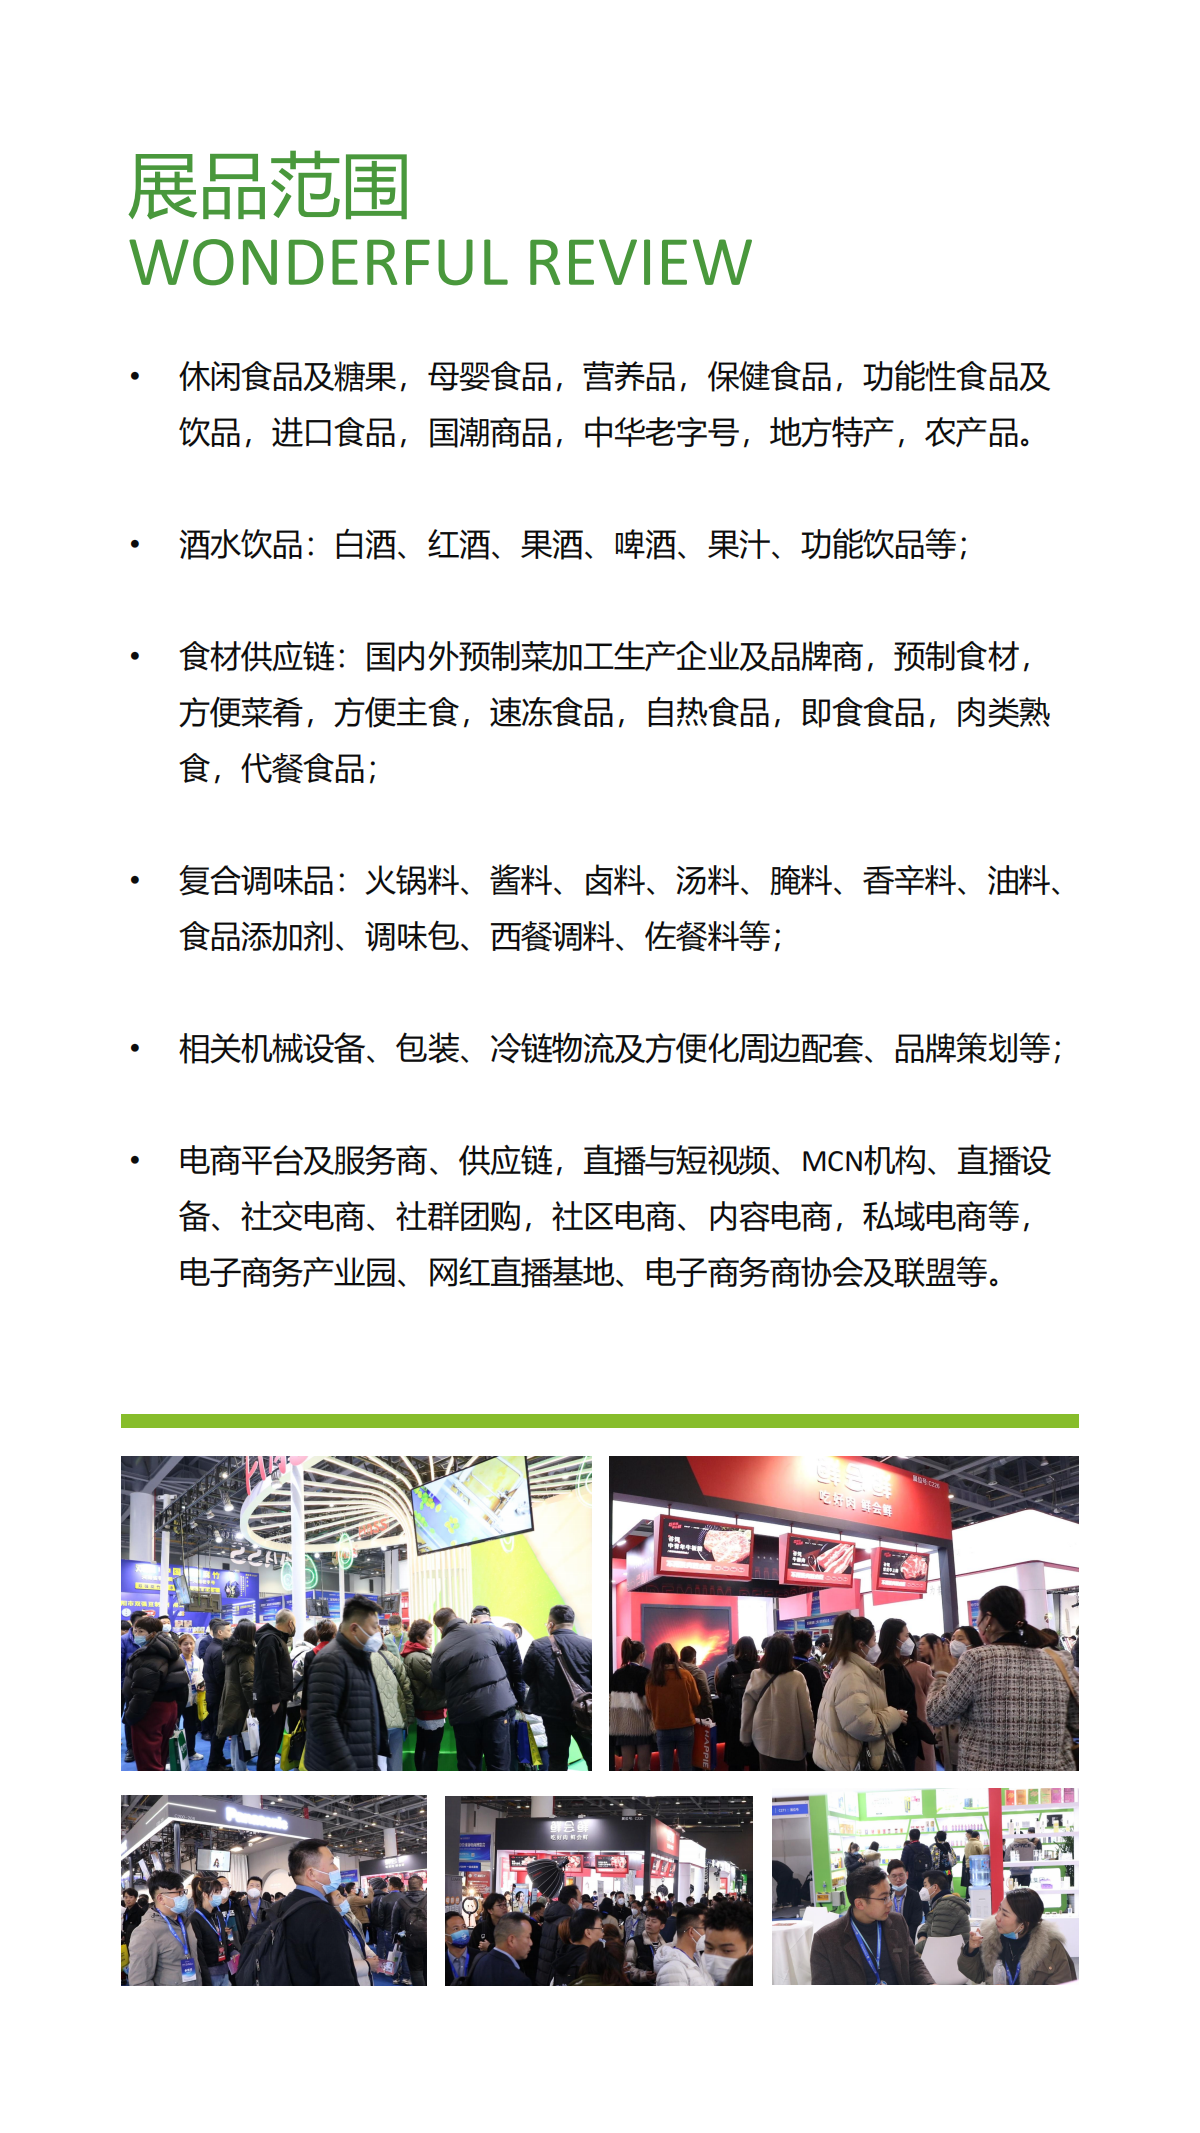 2023杭州美食电商新渠道博览会暨杭州食品展